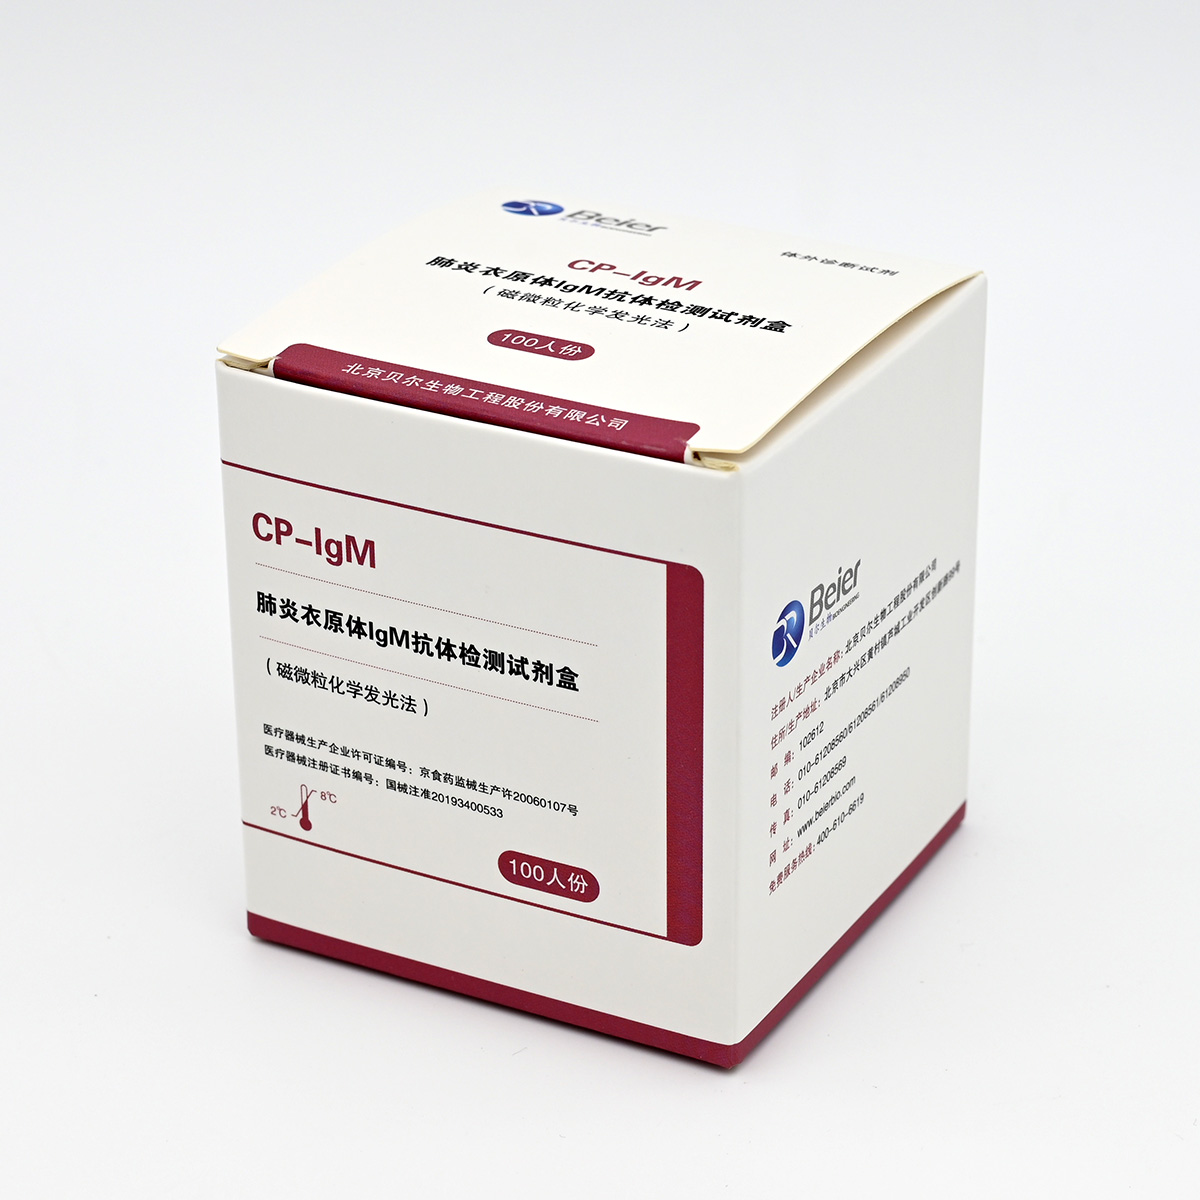 【贝尔】肺炎衣原体IgM抗体检测试剂盒(磁微粒化学发光法)